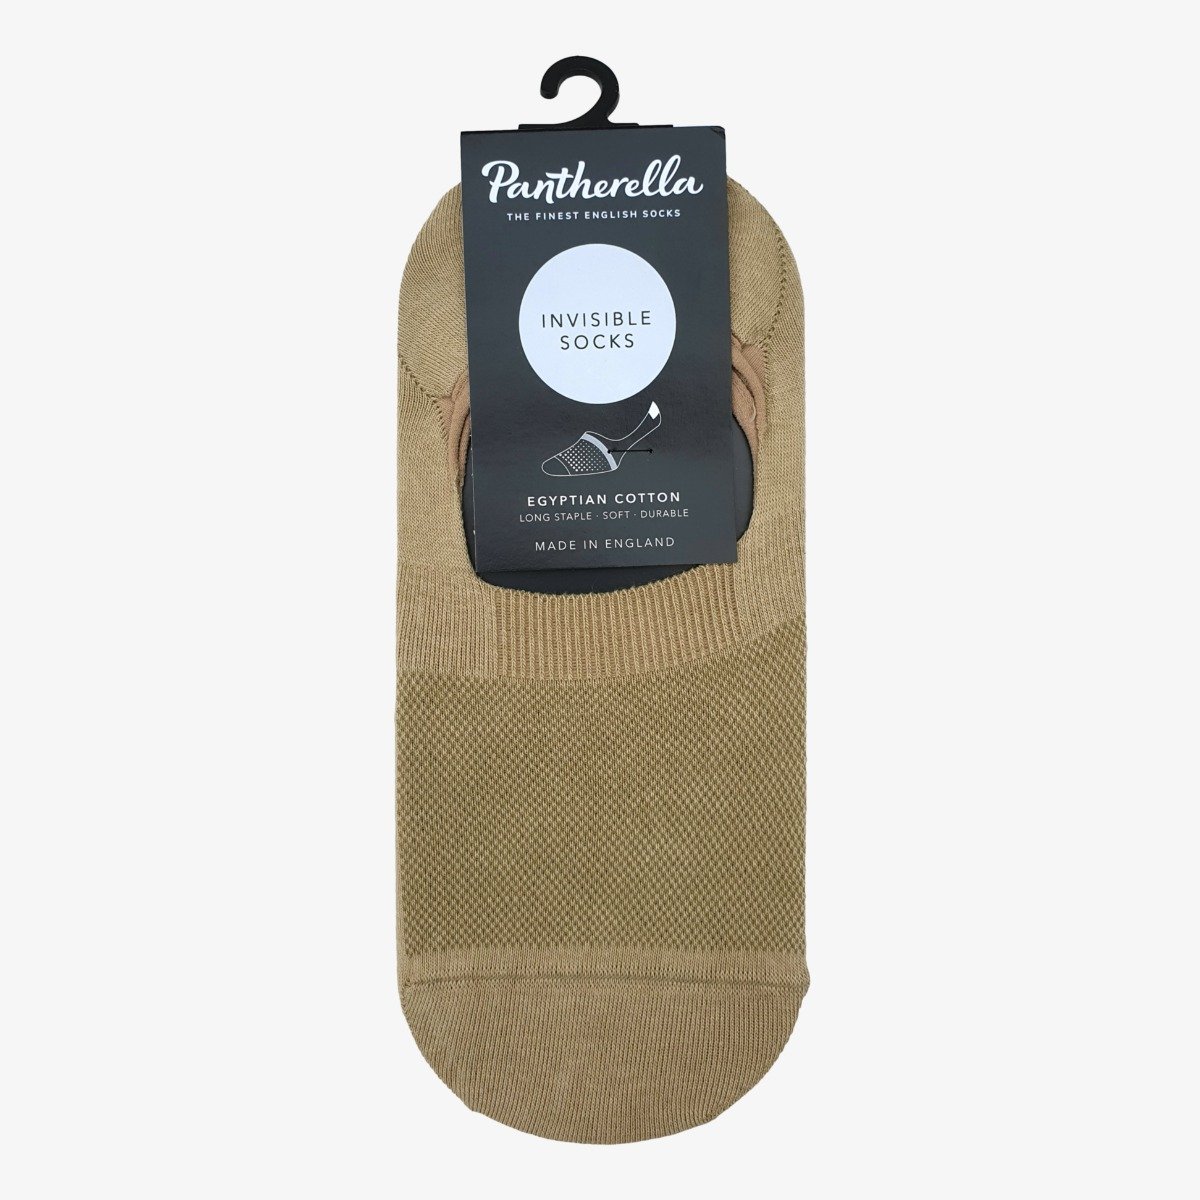 Pantharella Seville light khaki cotton invisible men's socks